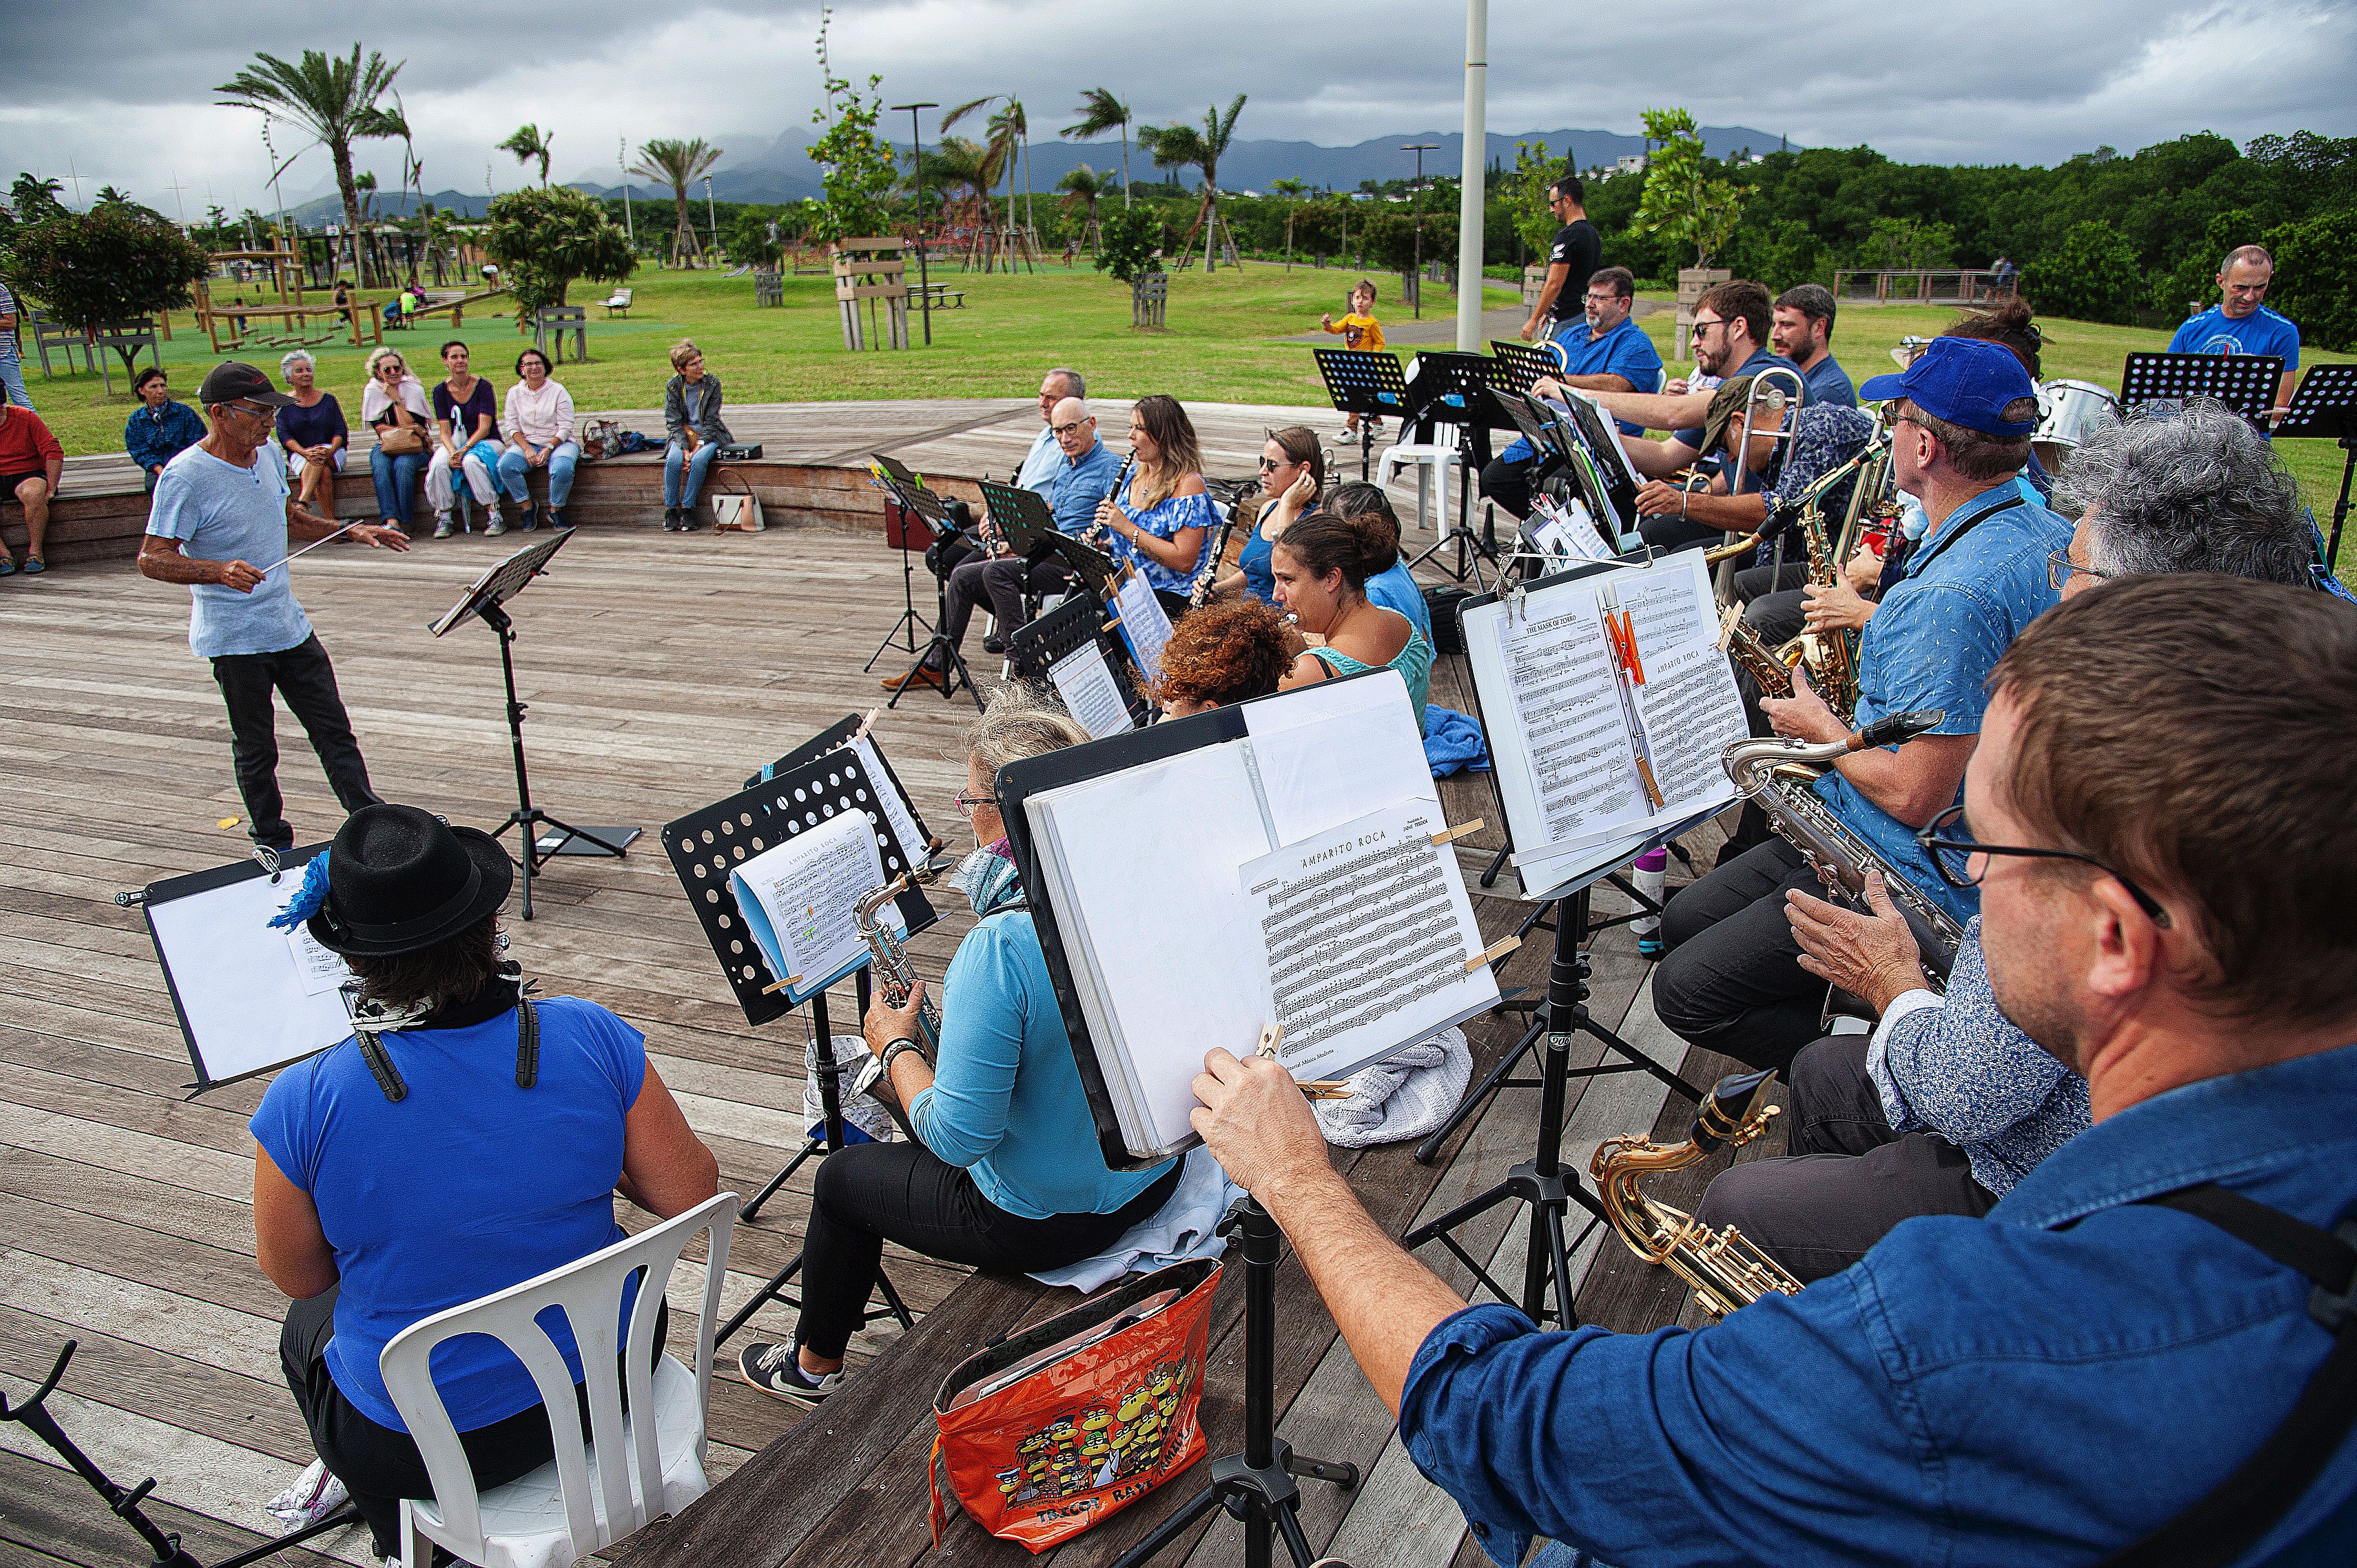 L’orchestre l’Harmonie du Caillou s’est lui produit samedi après-midi au parc urbain. Le répertoire était composé de musique de films et de chansons françaises et espagnoles.